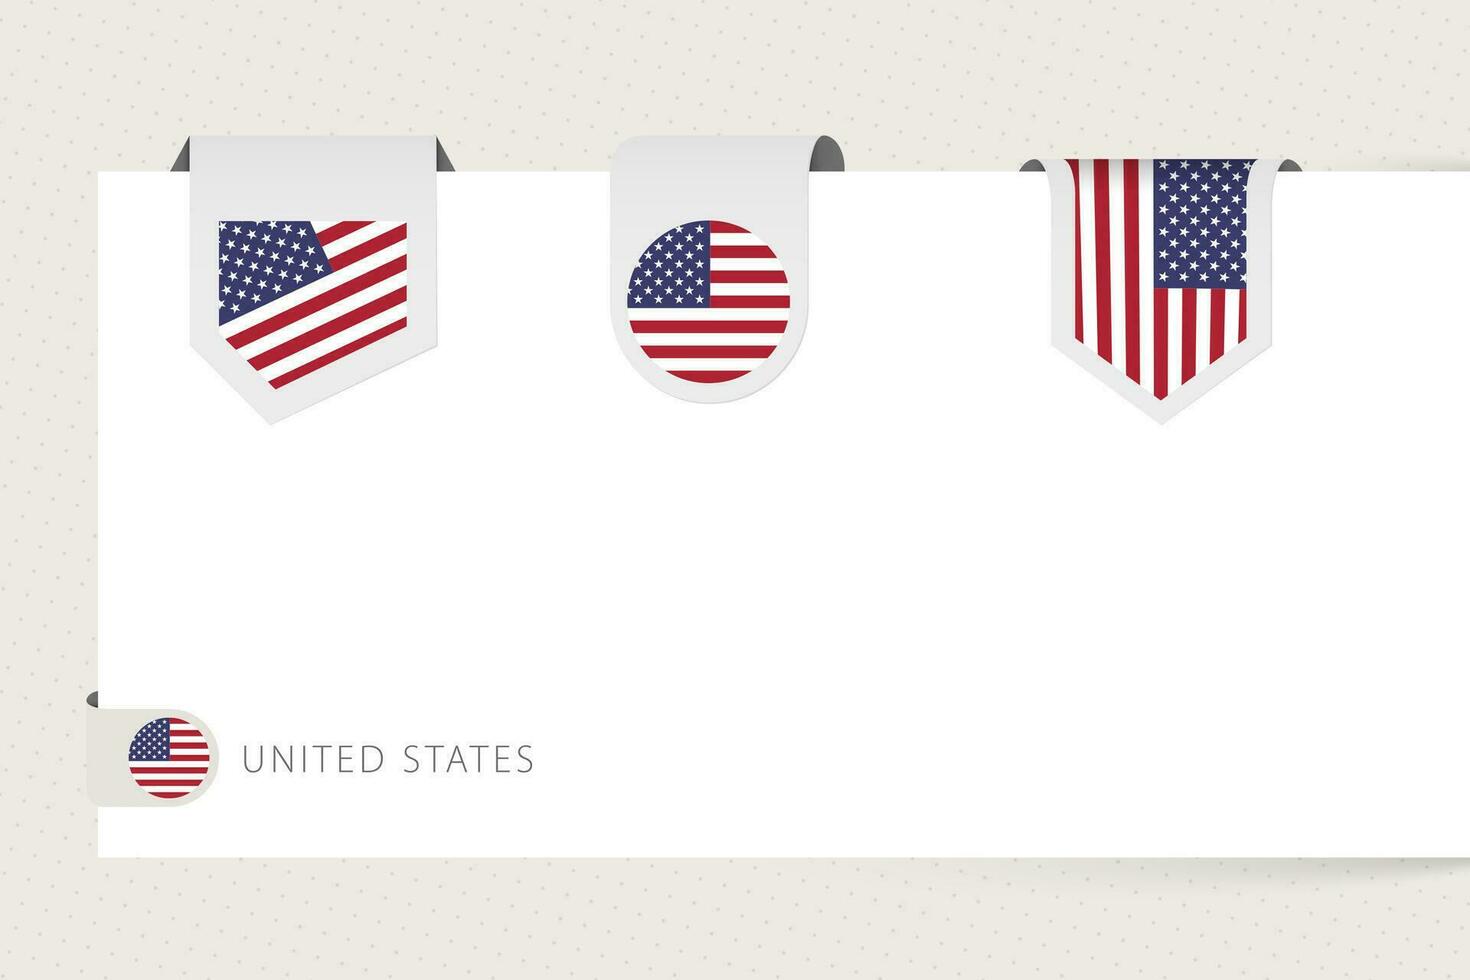 étiquette drapeau collection de uni États dans différent forme. ruban drapeau modèle de Etats-Unis vecteur